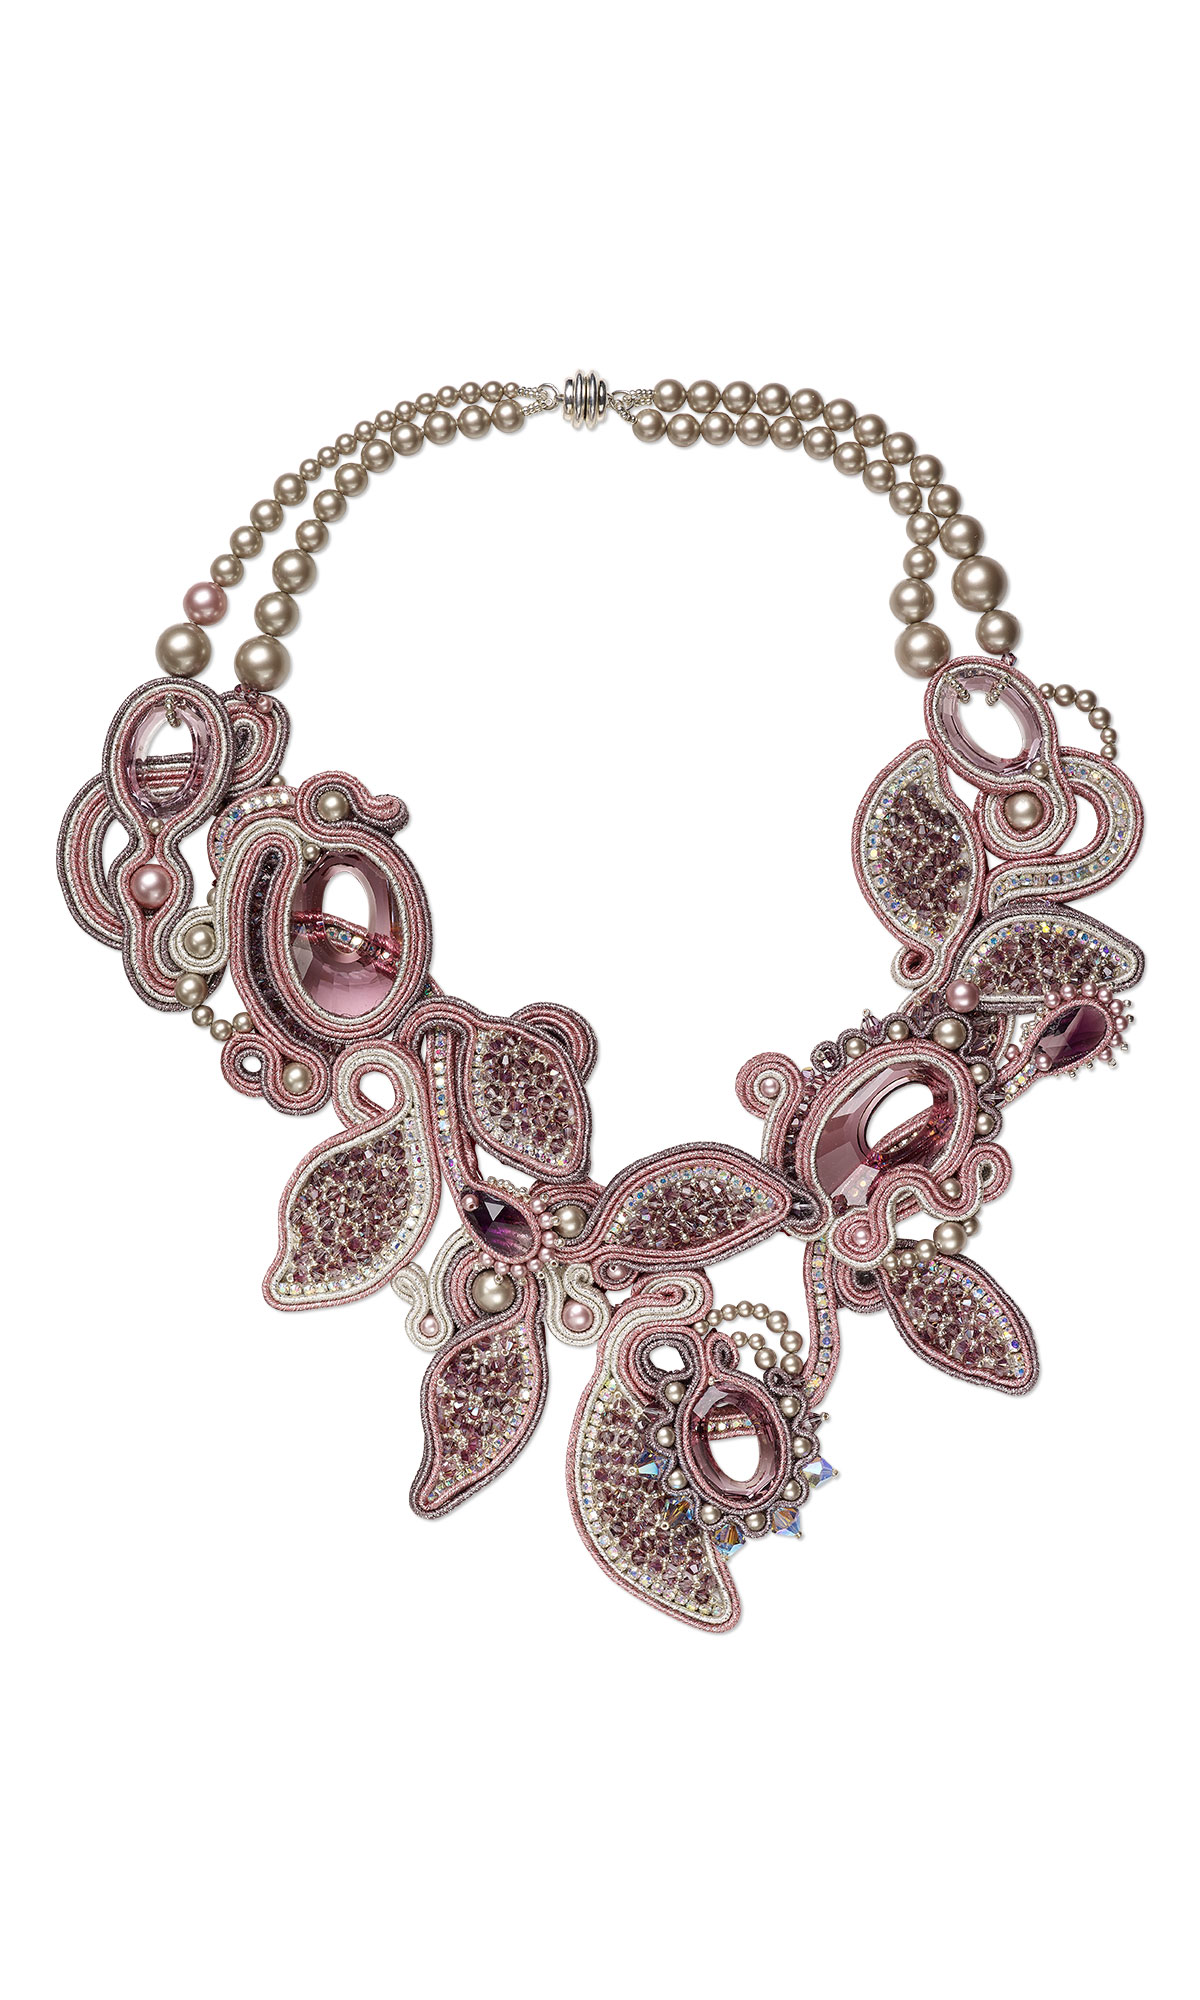 Jewelry Design - Double-Strand Necklace with Swarovski Crystal ...